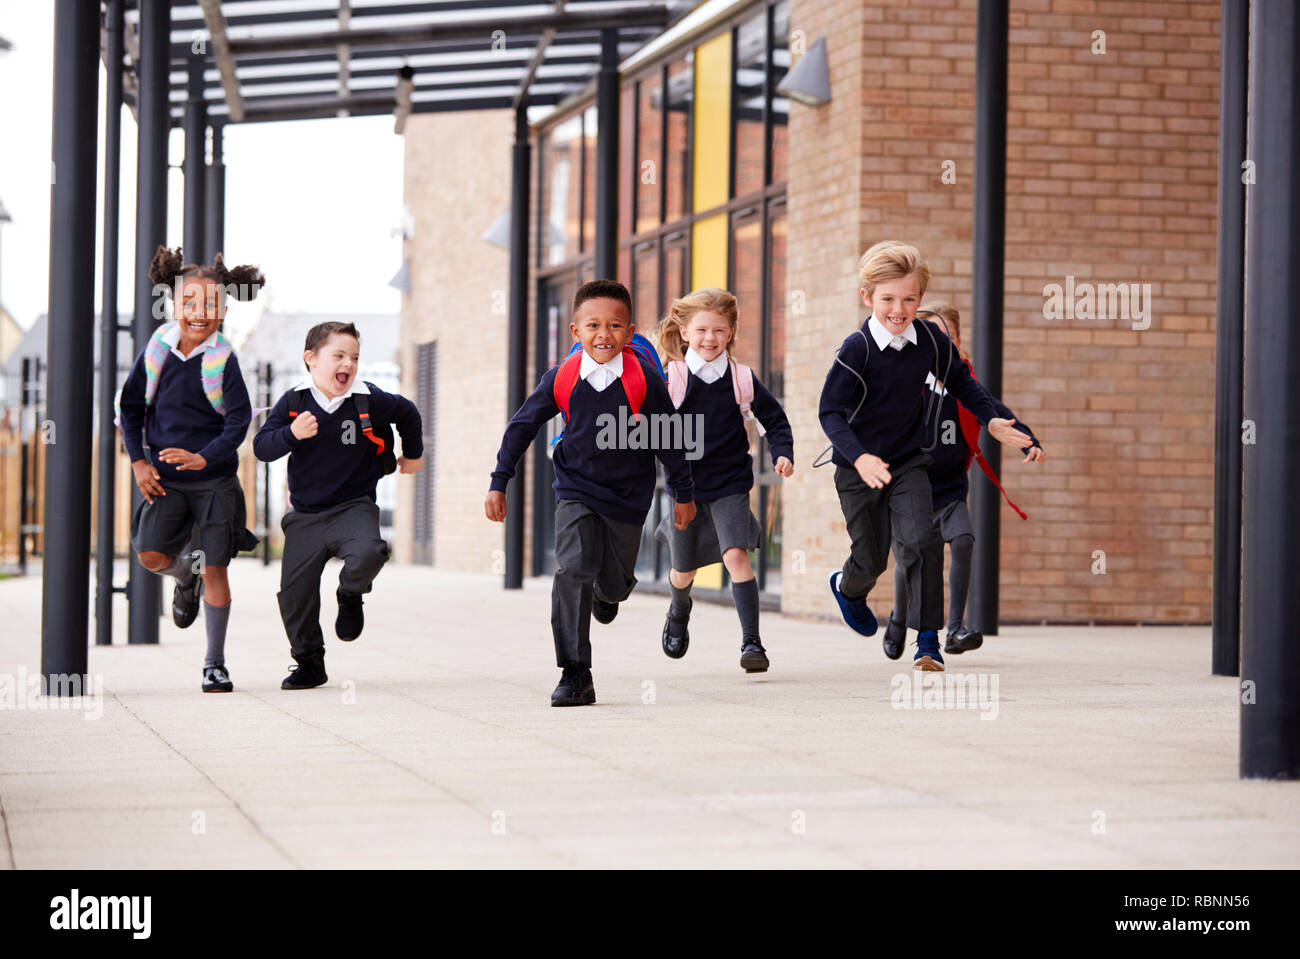 Grundschule Kinder, das Tragen von Schuluniformen und Rucksäcke, die auf dem Gehweg außerhalb ihrer Schule Gebäude, Vorderansicht Stockfoto